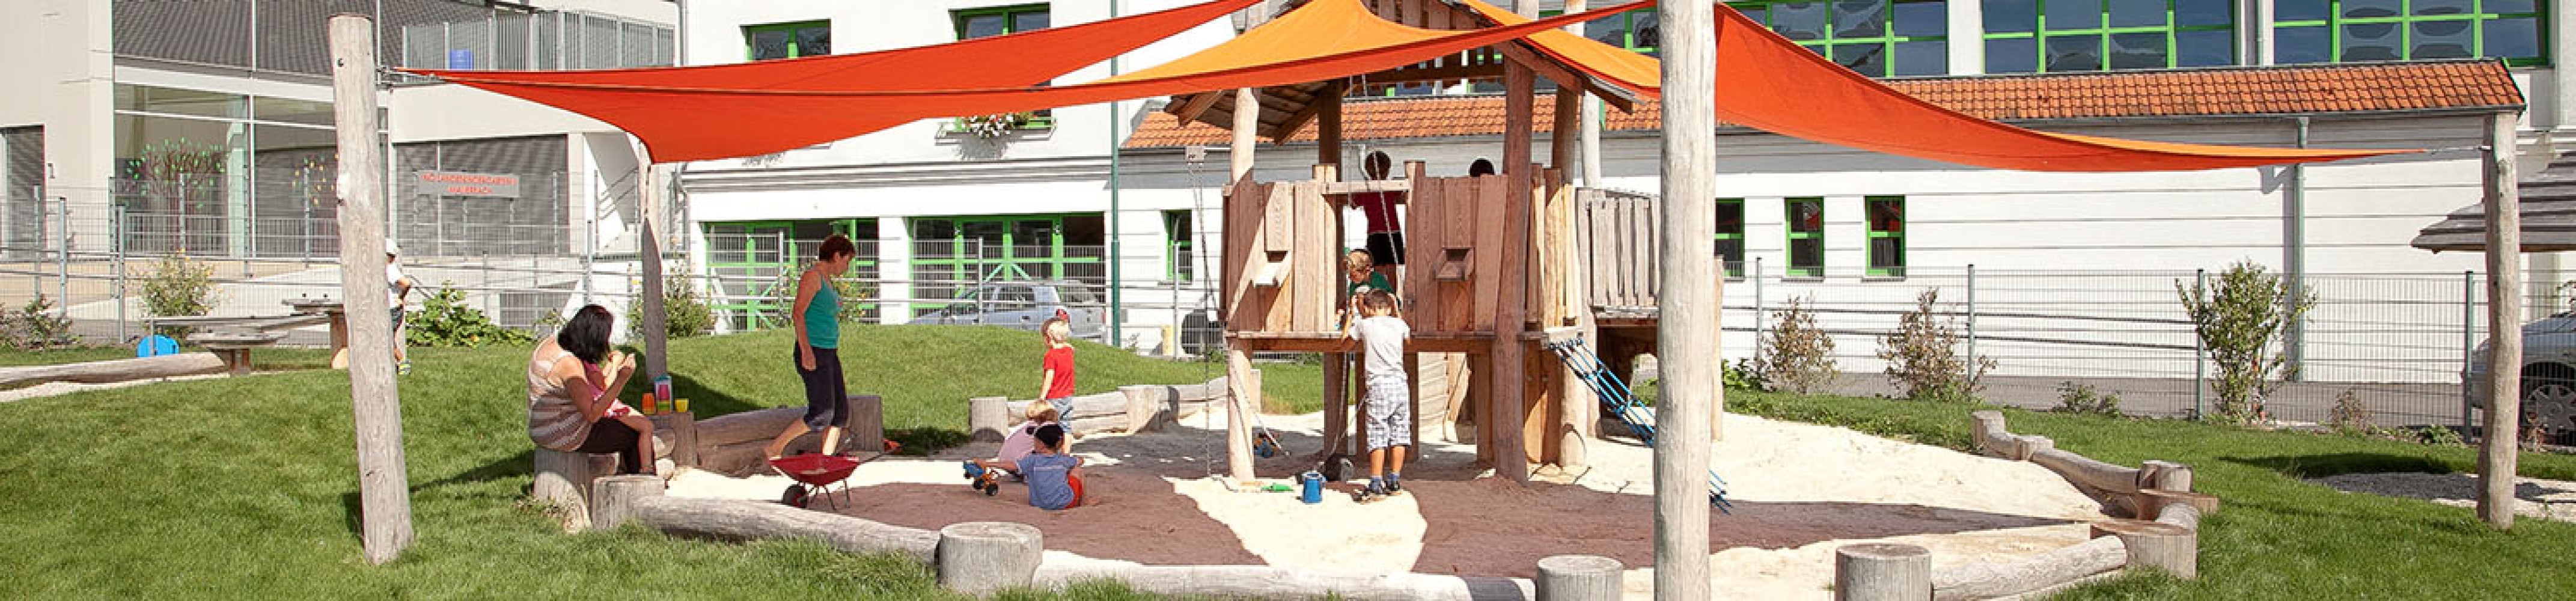 sandspielanlage-kindergarten-beschattung-sonnensegel-sandeinfassung-kletternetz-spielende-kinder